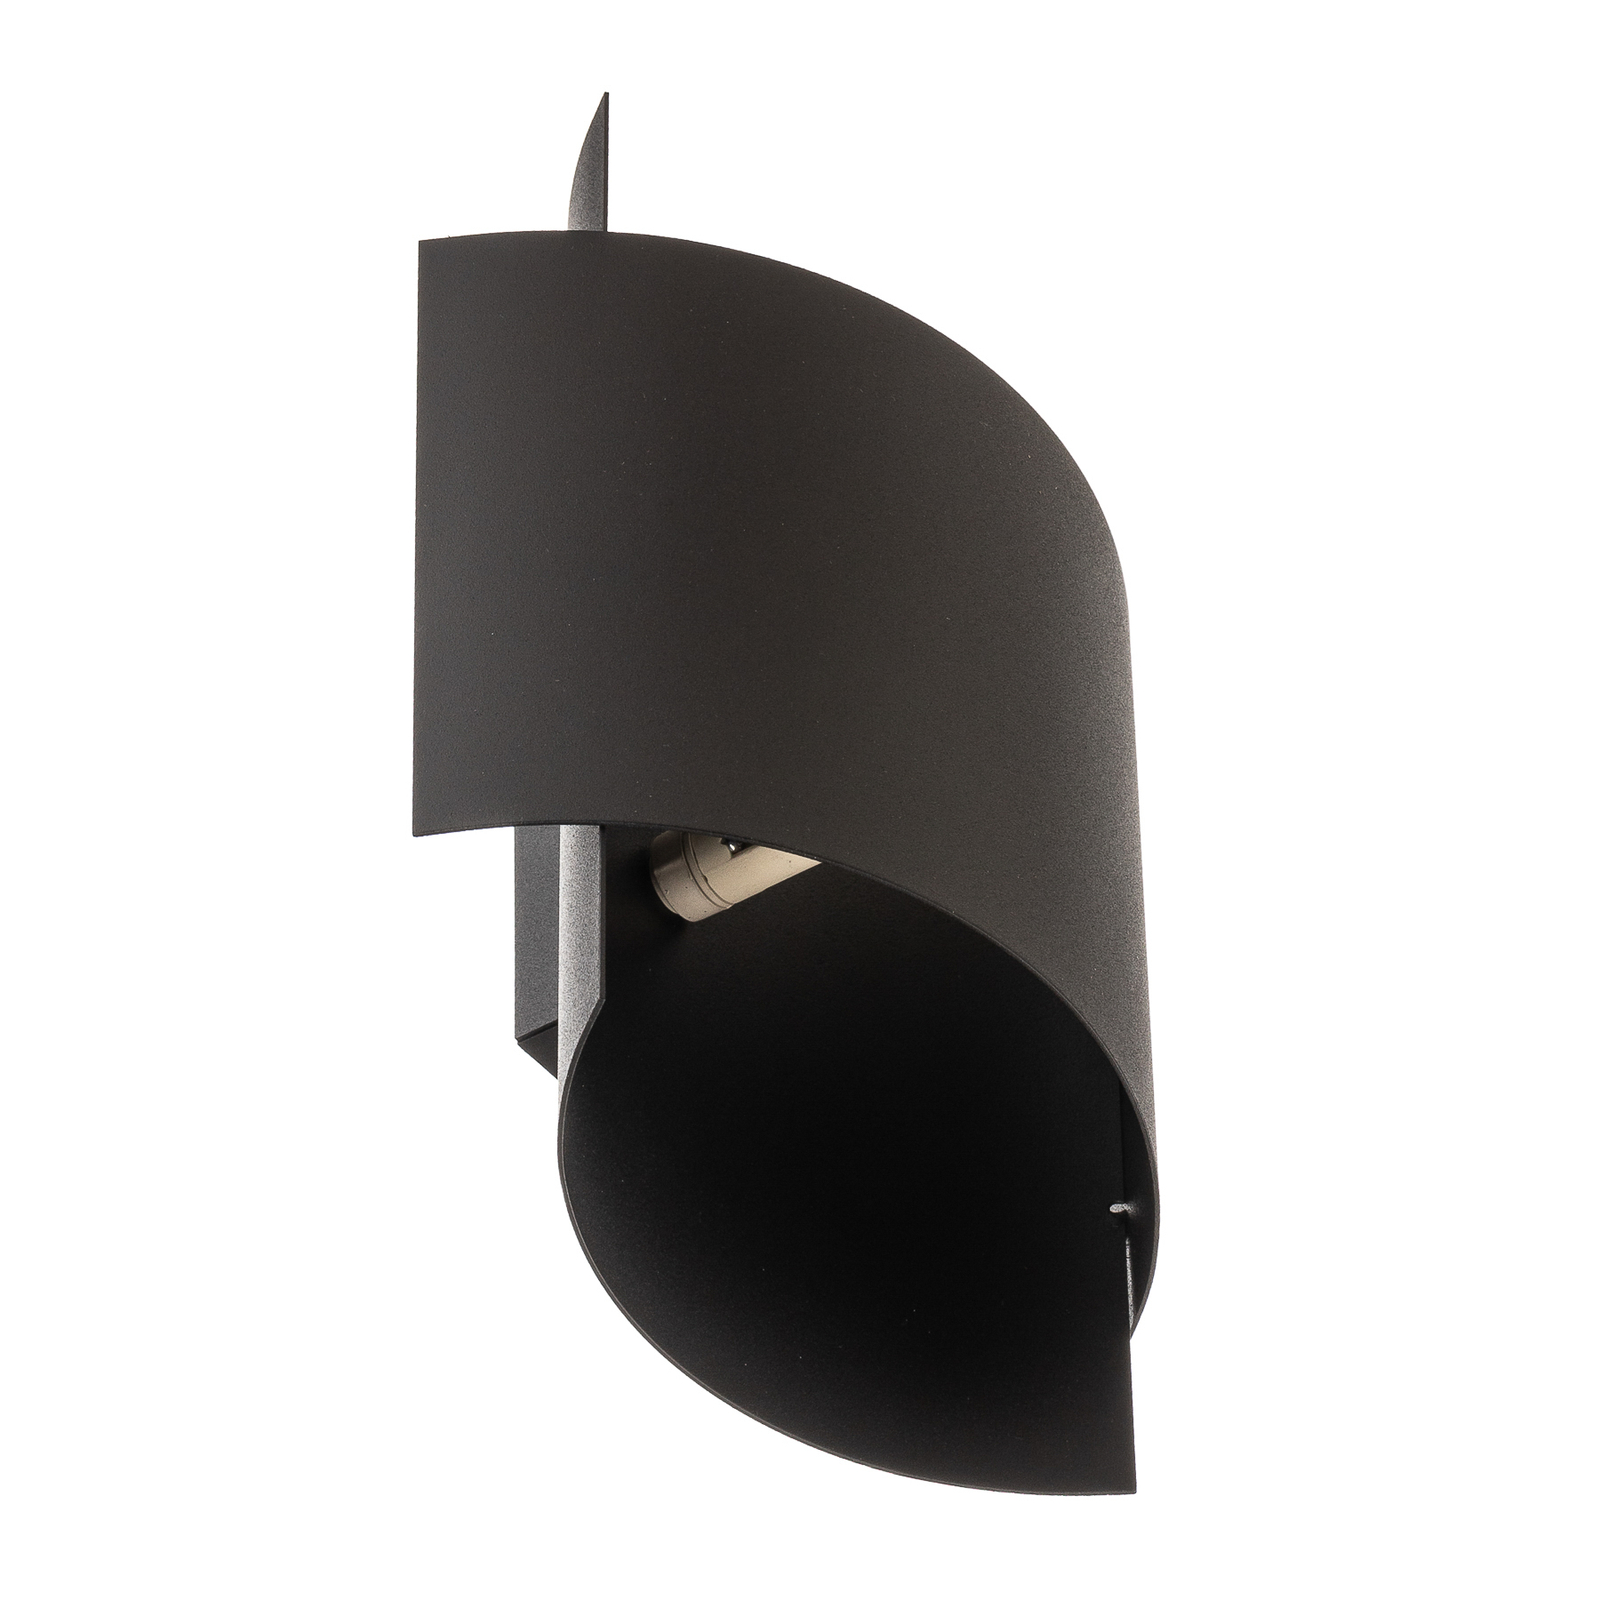 Stenska svetilka Pako iz dveh jeklenih plošč v črni barvi